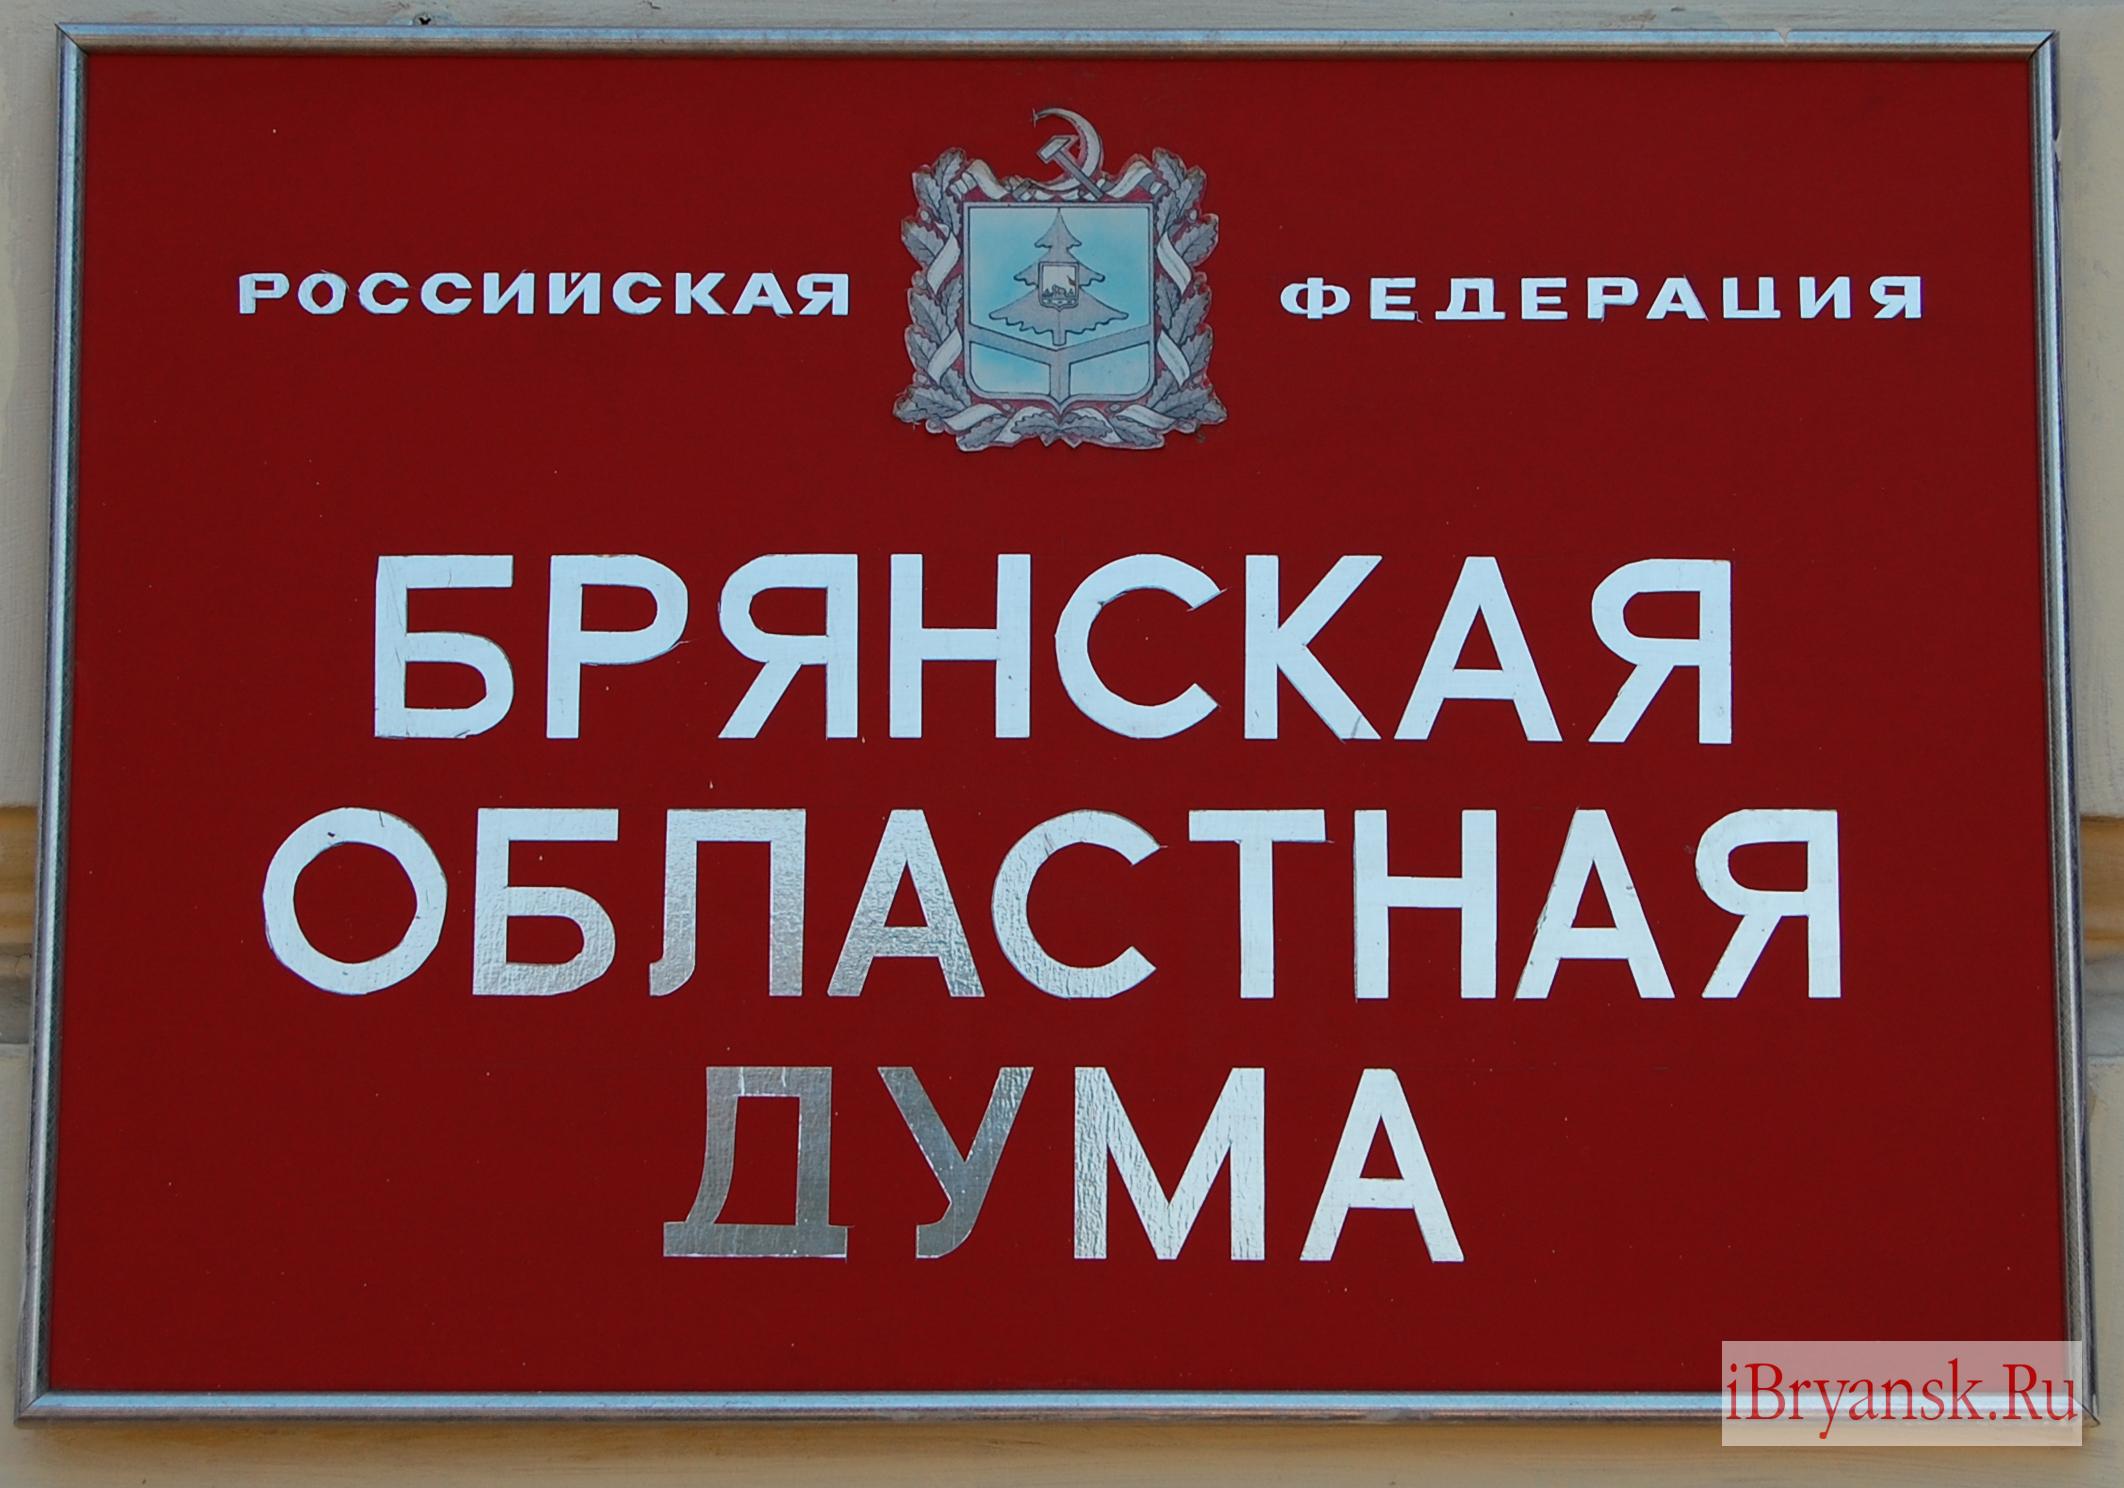 В Брянскую областную думу прошёл кандидат без российского гражданства